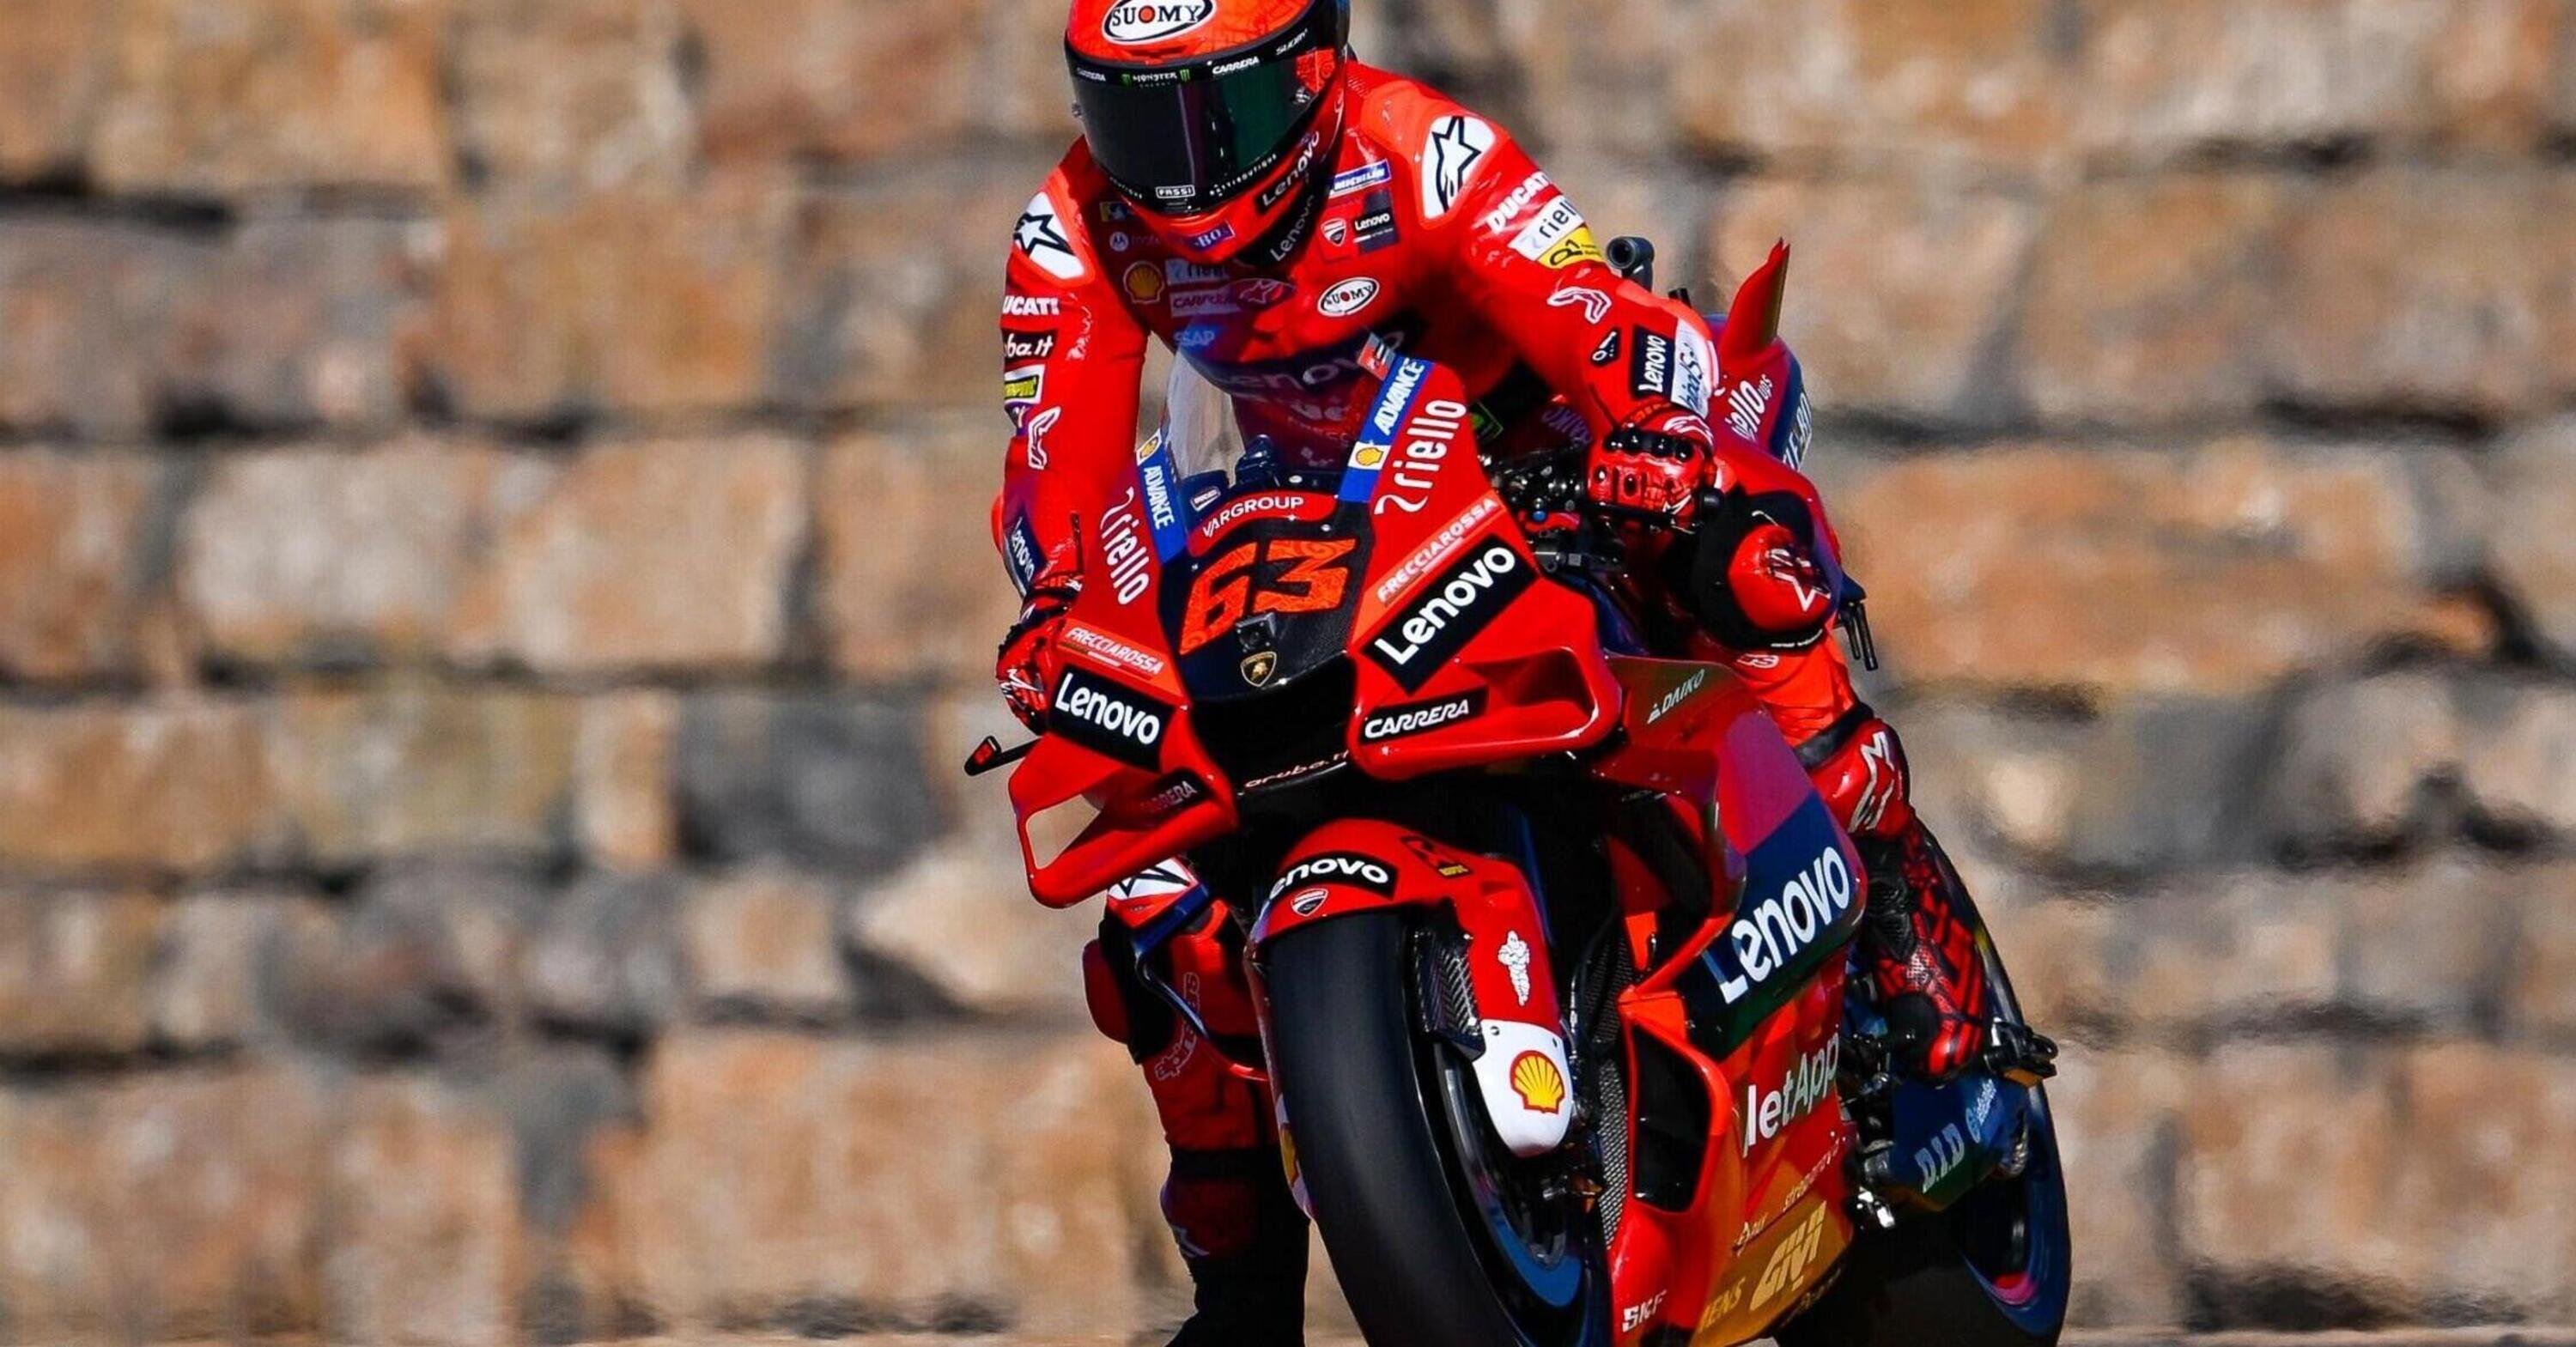 MotoGP 2022. GP di Aragon. Pecco Bagnaia: &ldquo;Ho un bel margine di miglioramento&rdquo;